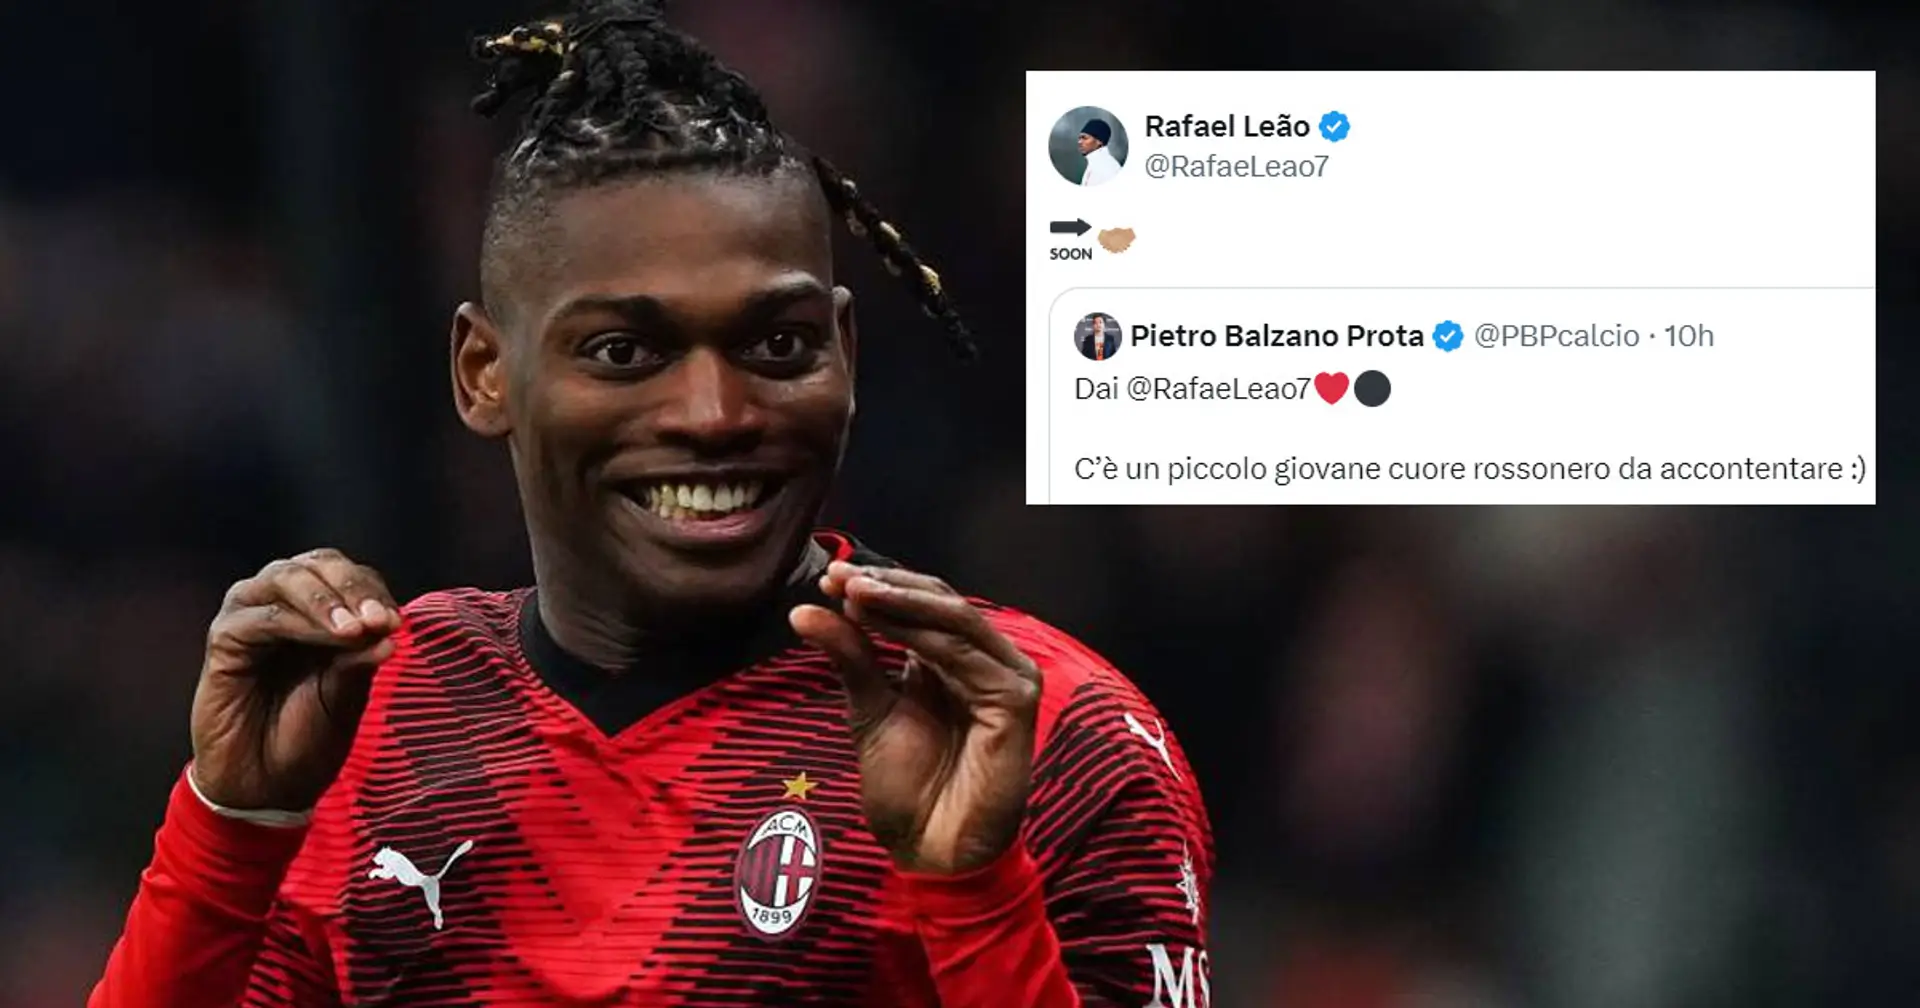 Un giovanissimo tifoso del Milan farà "700km per vedere Rafa Leao": la stella portoghese gli risponde sui social